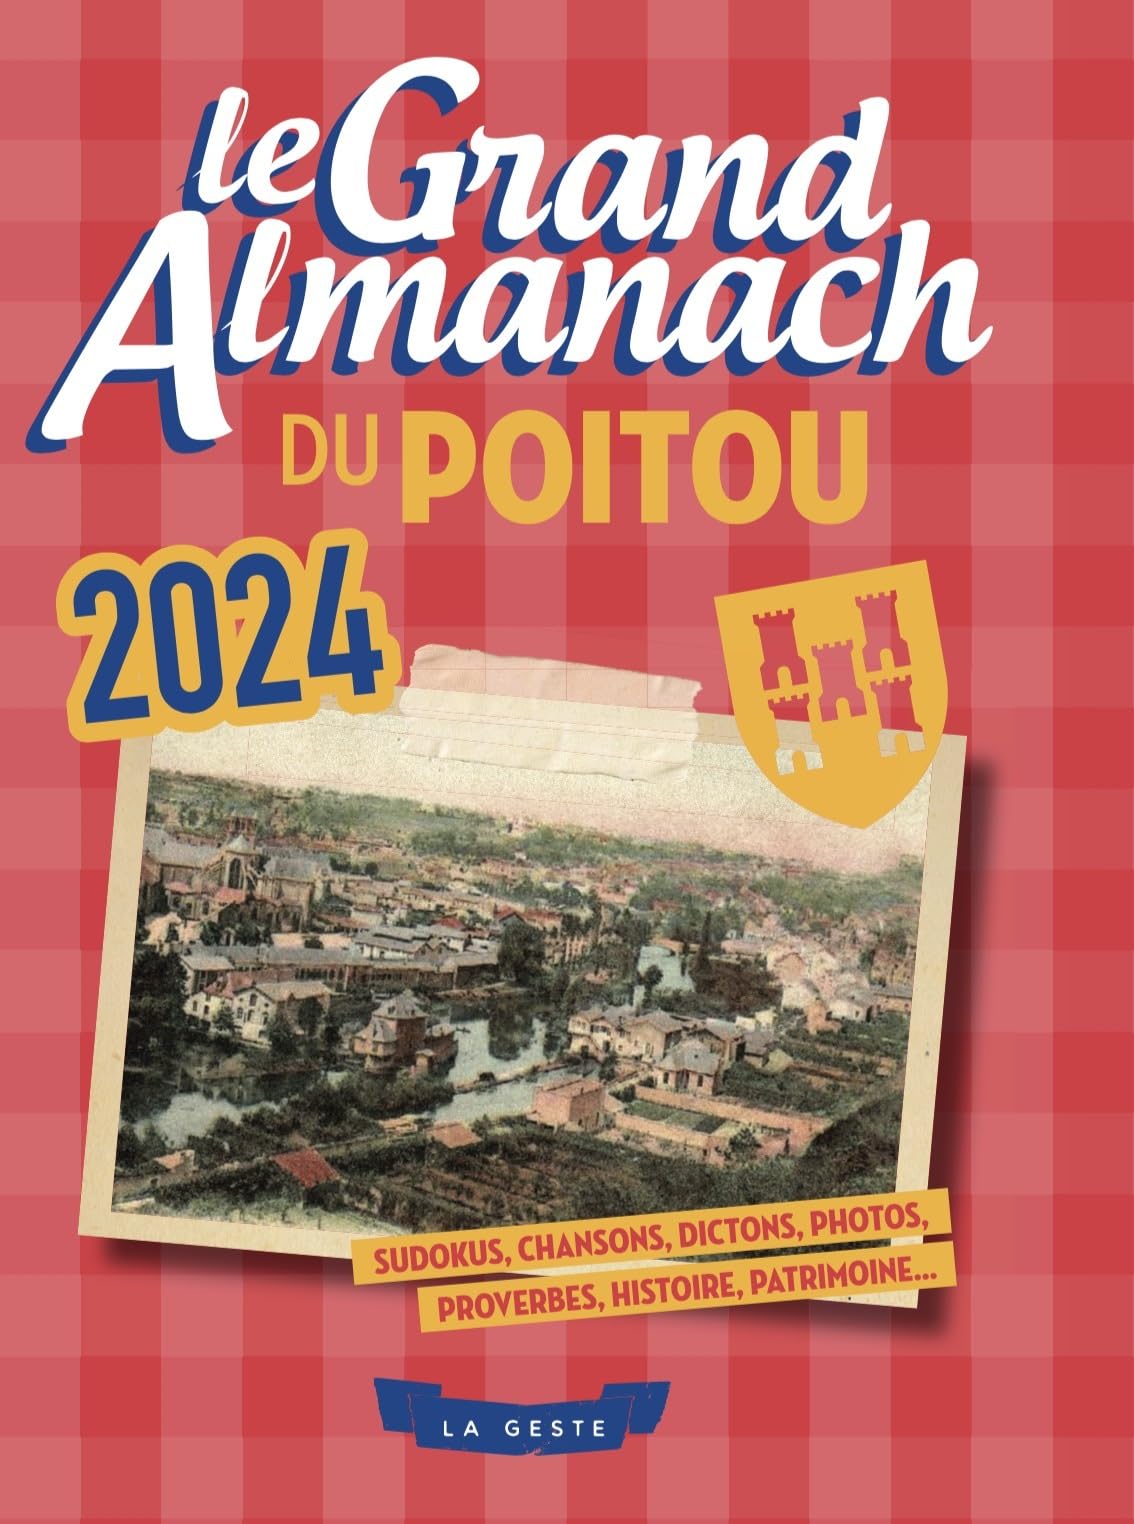 Le Grand Almanach du Poitou 2024